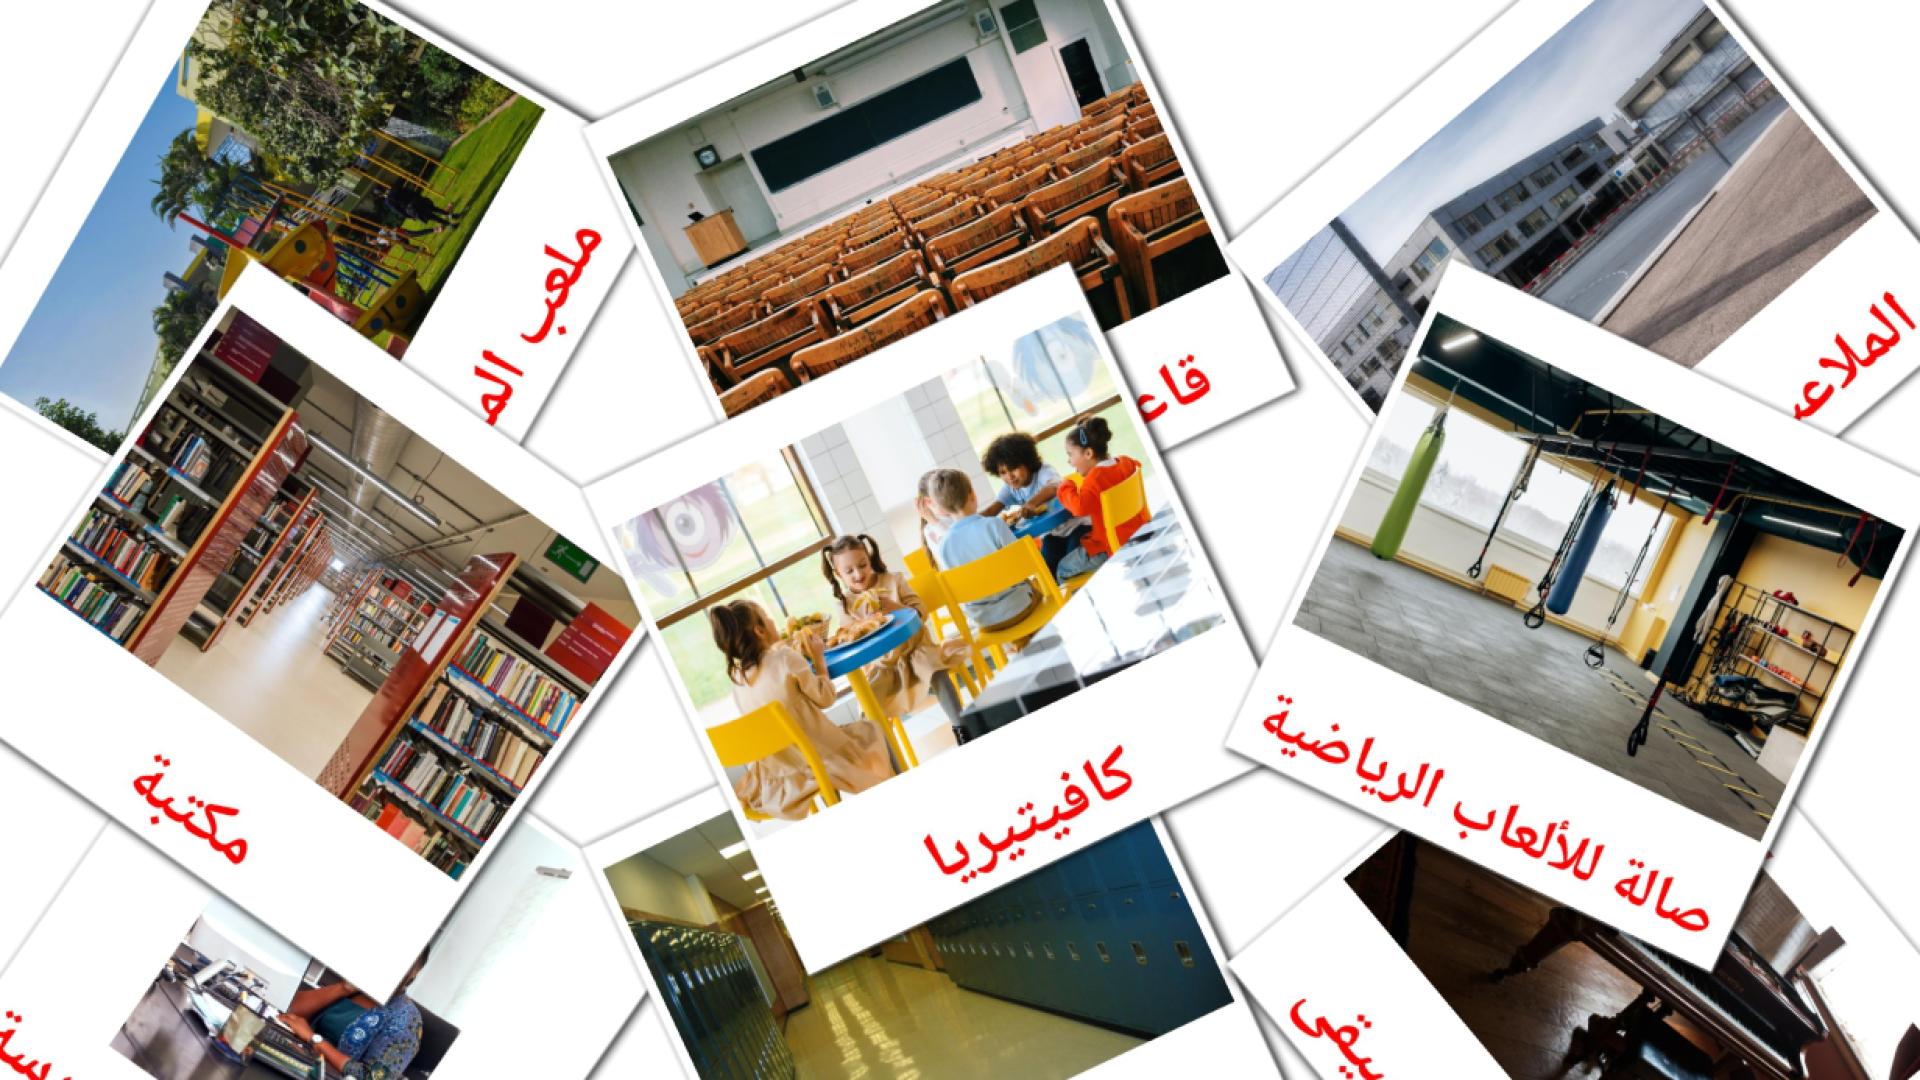 Schulgebäude - Arabisch Vokabelkarten